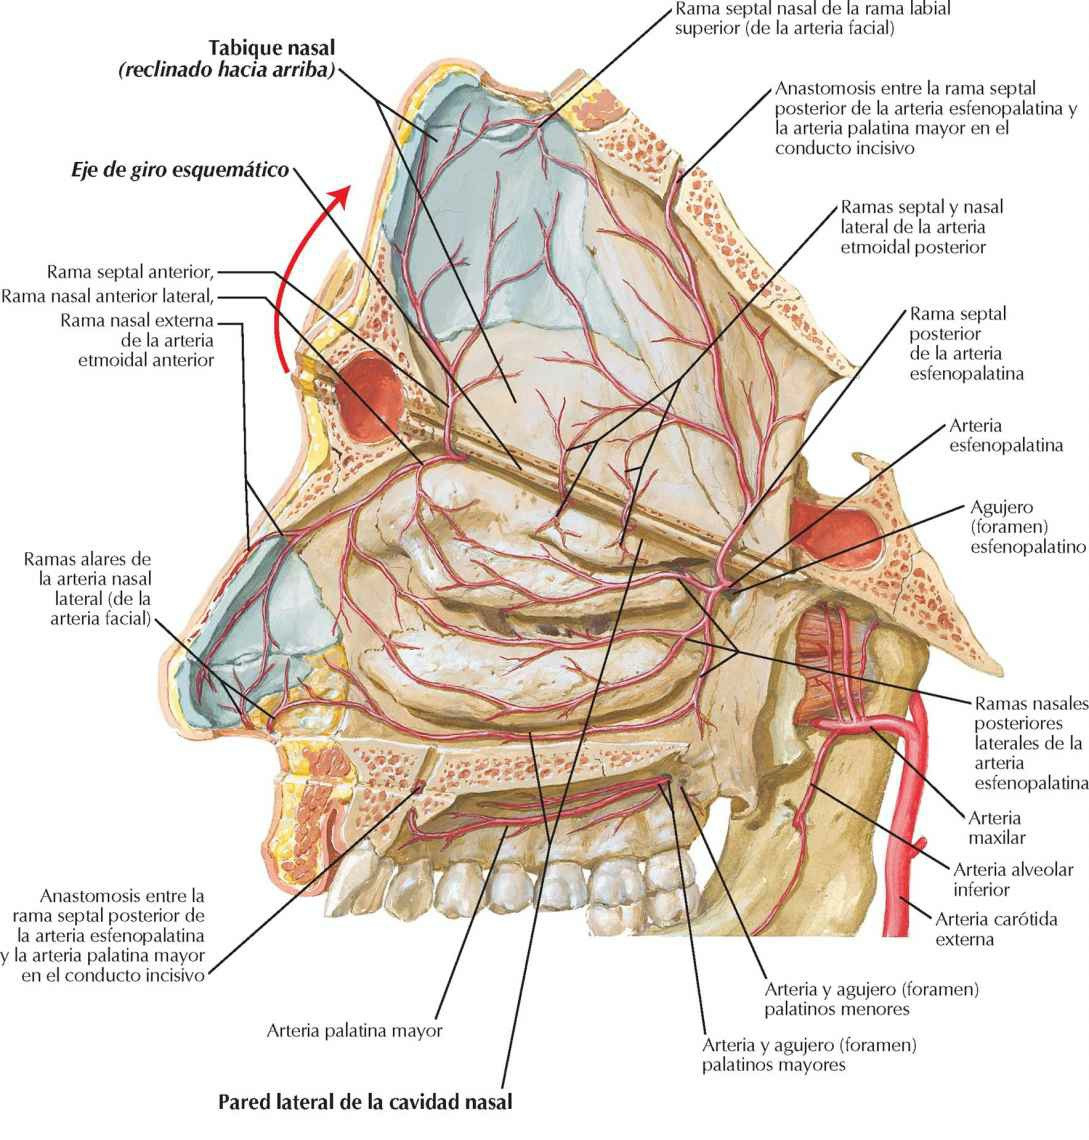 Arterias de la cavidad nasal: tabique nasal
reclinado hacia arriba.